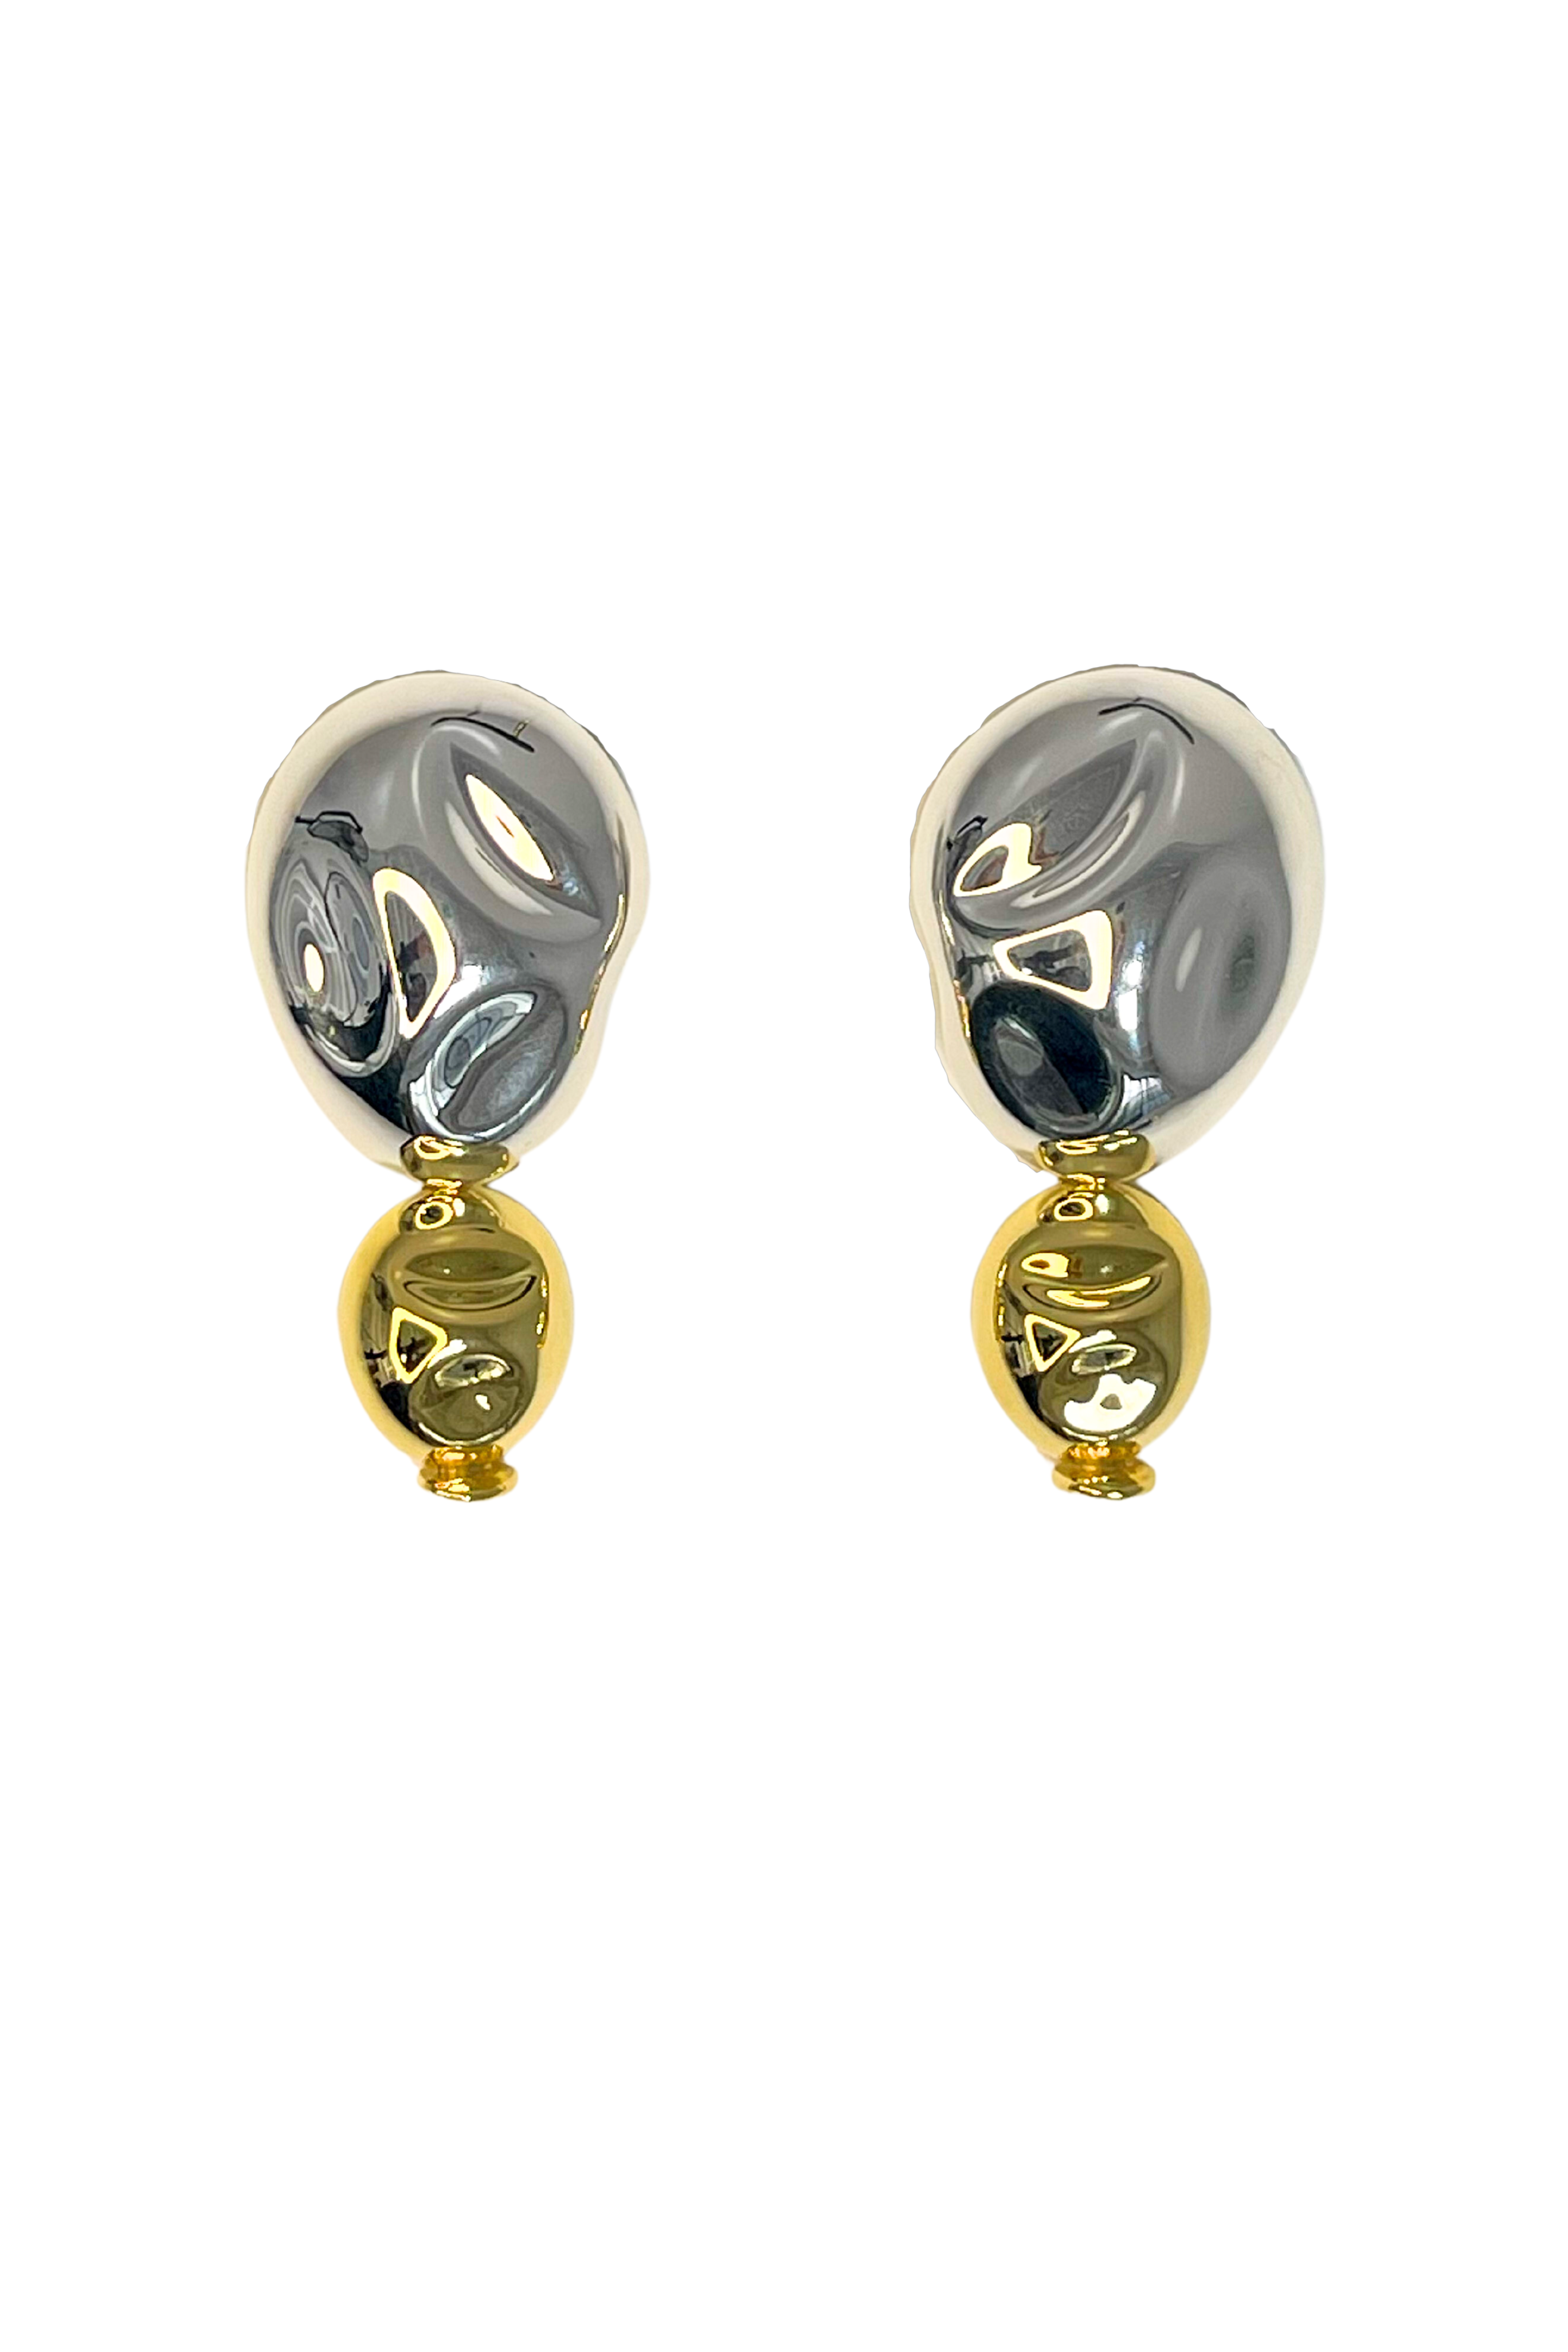 SORDO Oriente Earrings in Silver